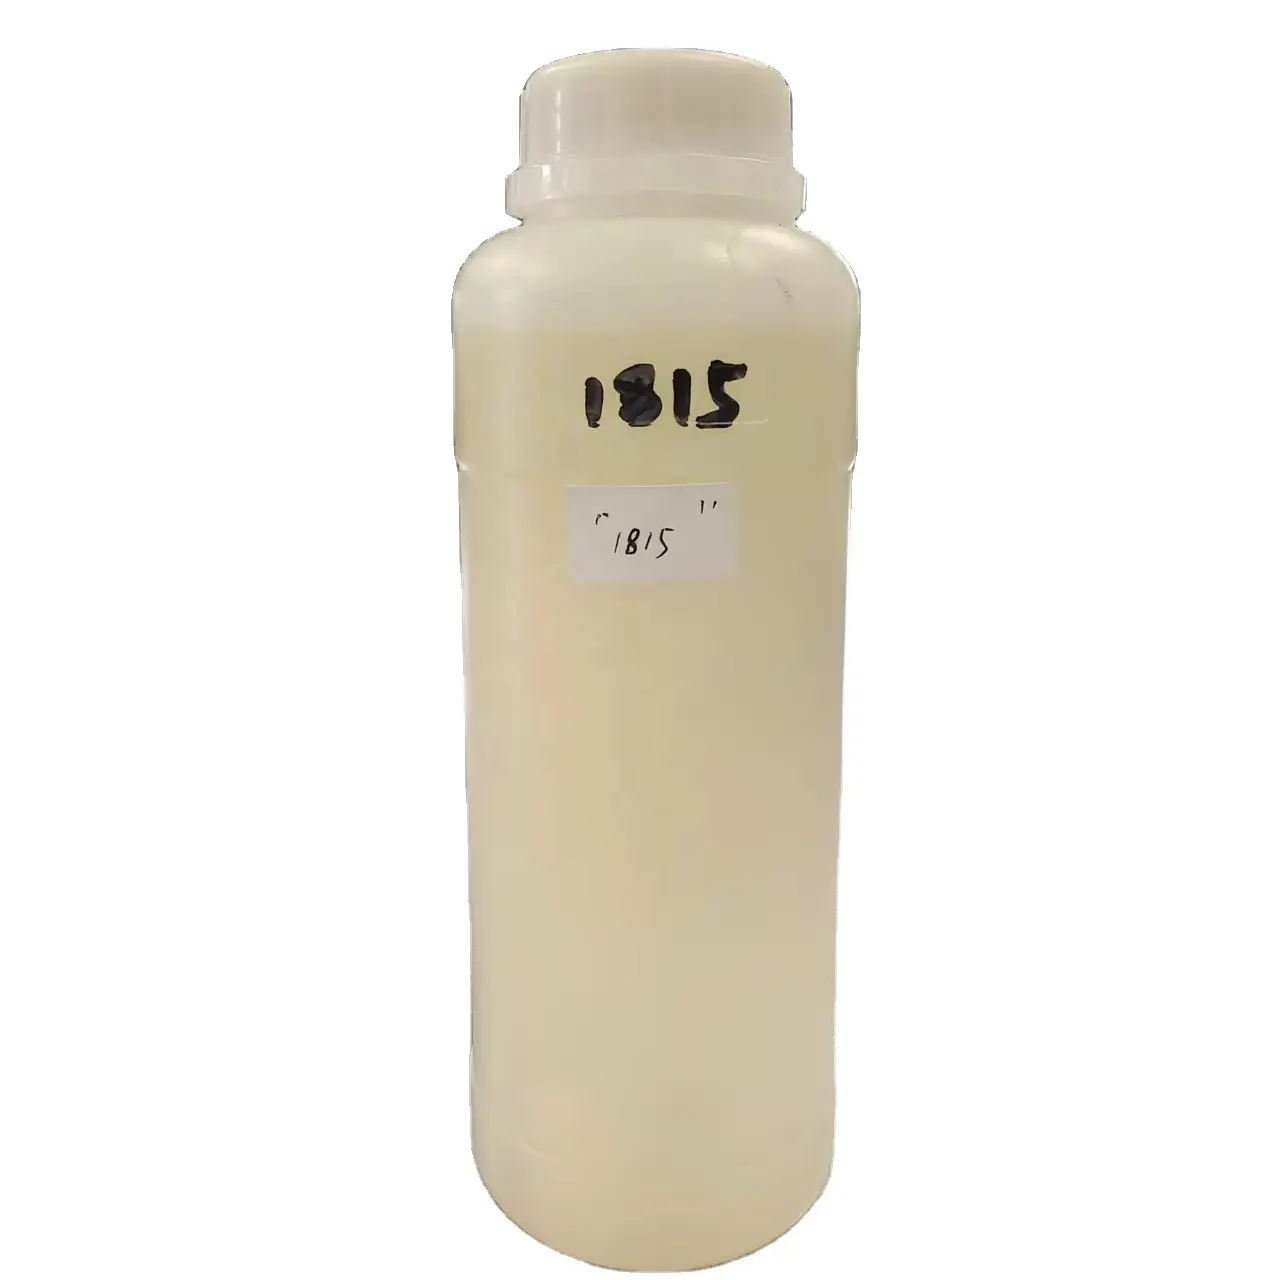 Modificado cycloaliphamine epóxi cura hardener1815 (escareador f205) com revestimento de piso epóxi metálico